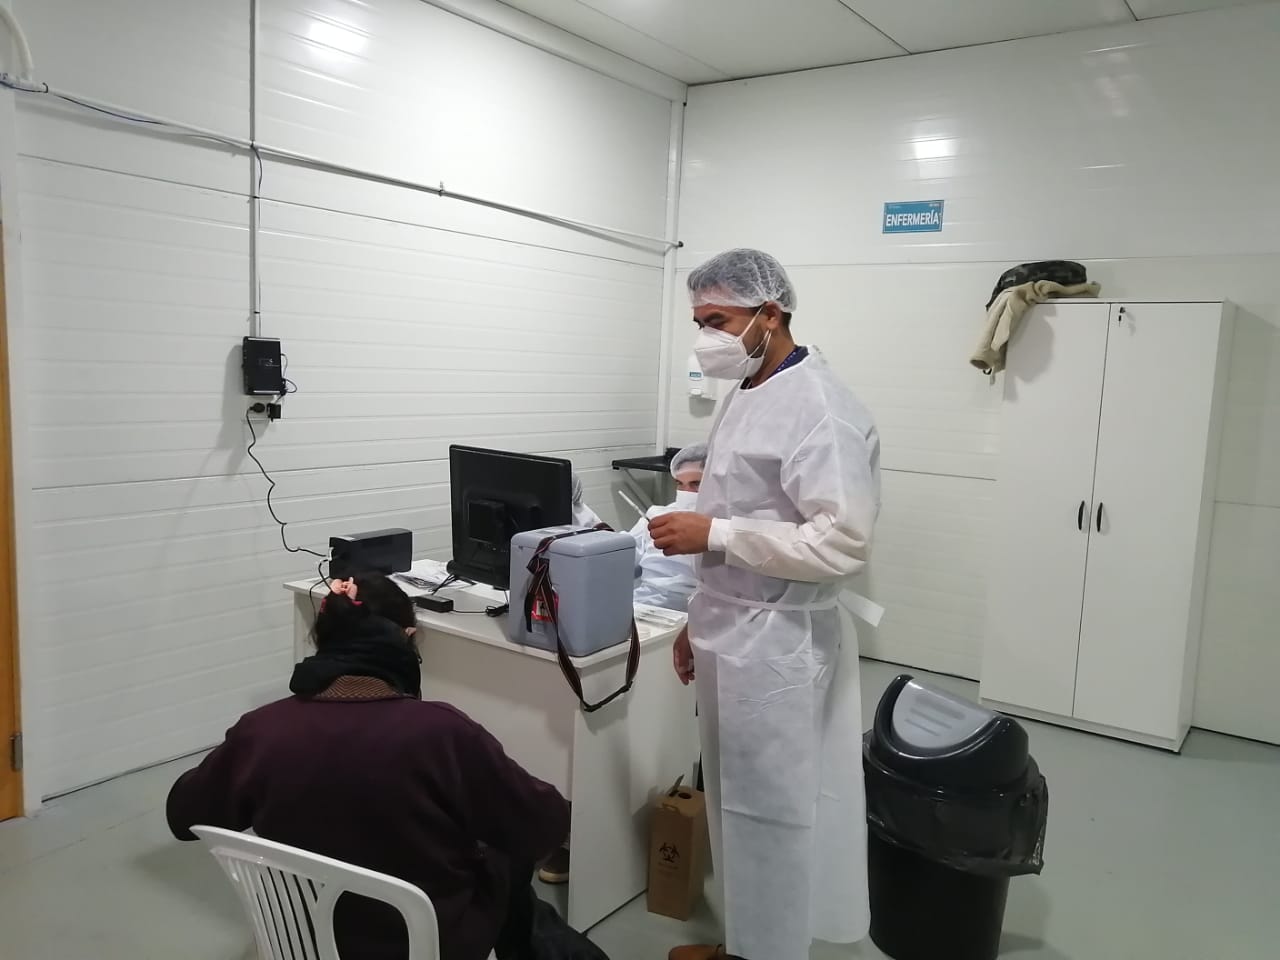 Vacunación contra el Covid-19 a adultos mayores en Capiatá. Foto: Wilma Gaona, periodista de Unicanal.